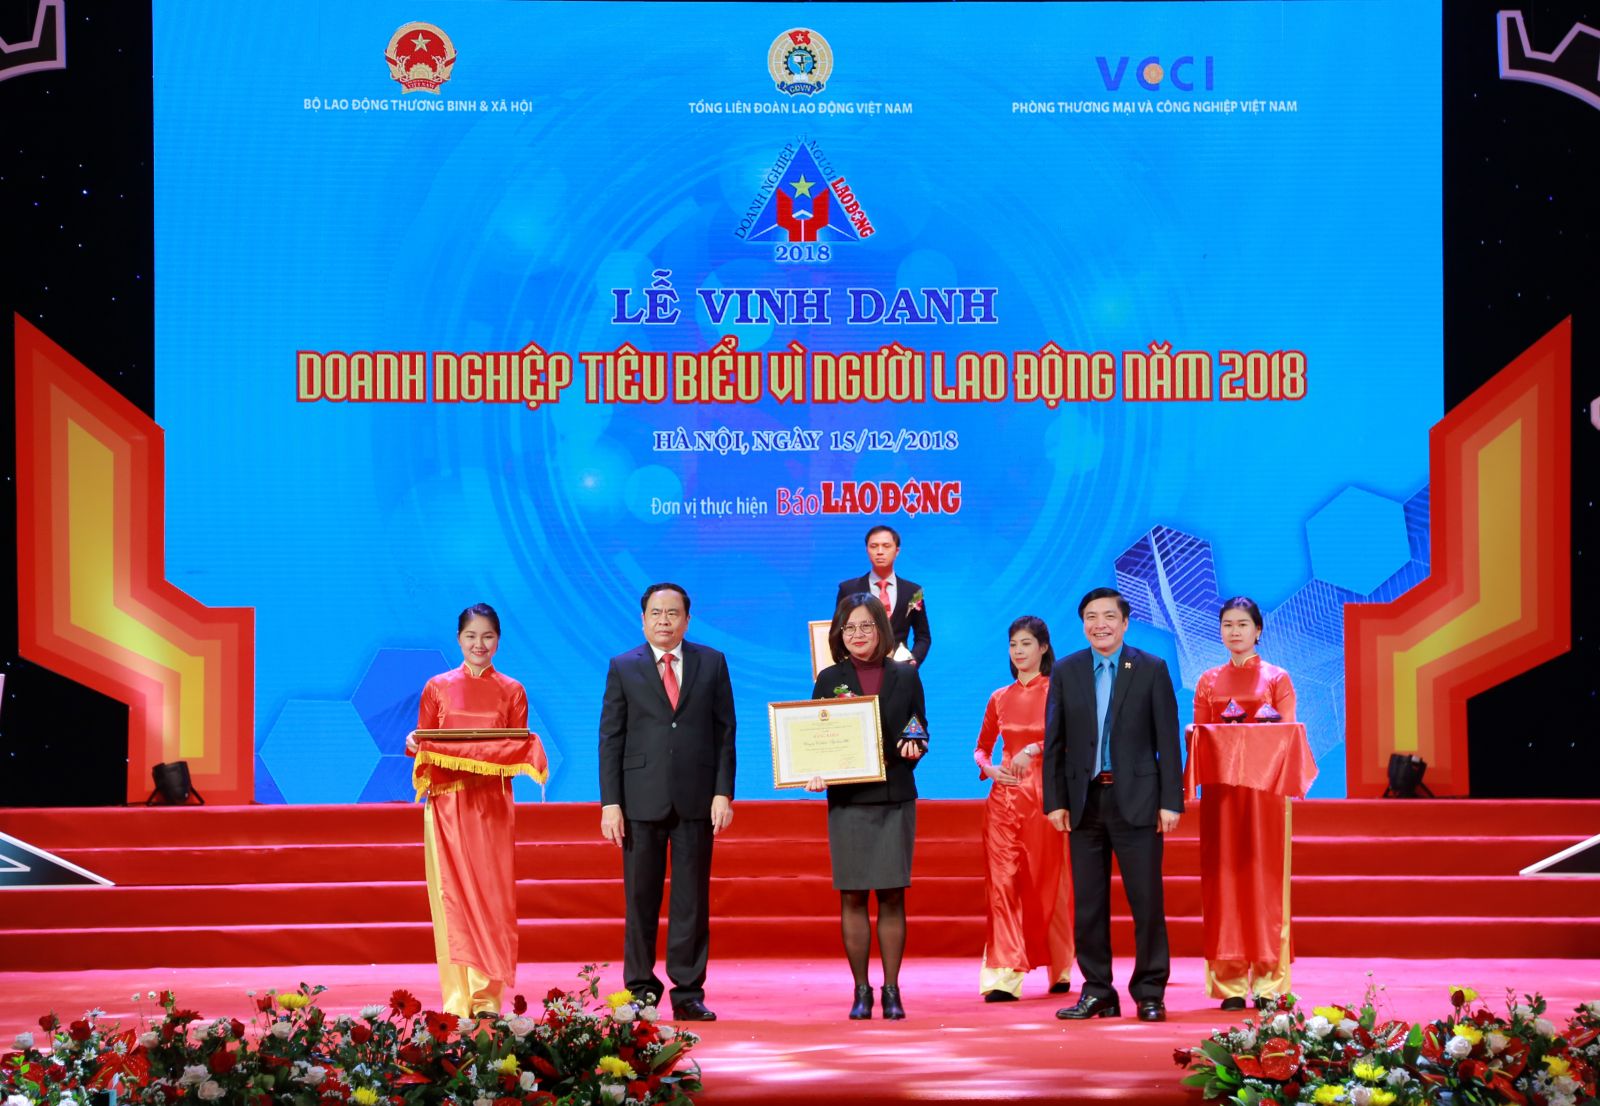 Bà Trần Tuyết Nhung – Phó TGĐ Tập đoàn BRG nhận bằng khen của Tổng liên đoàn Lao động Việt Nam